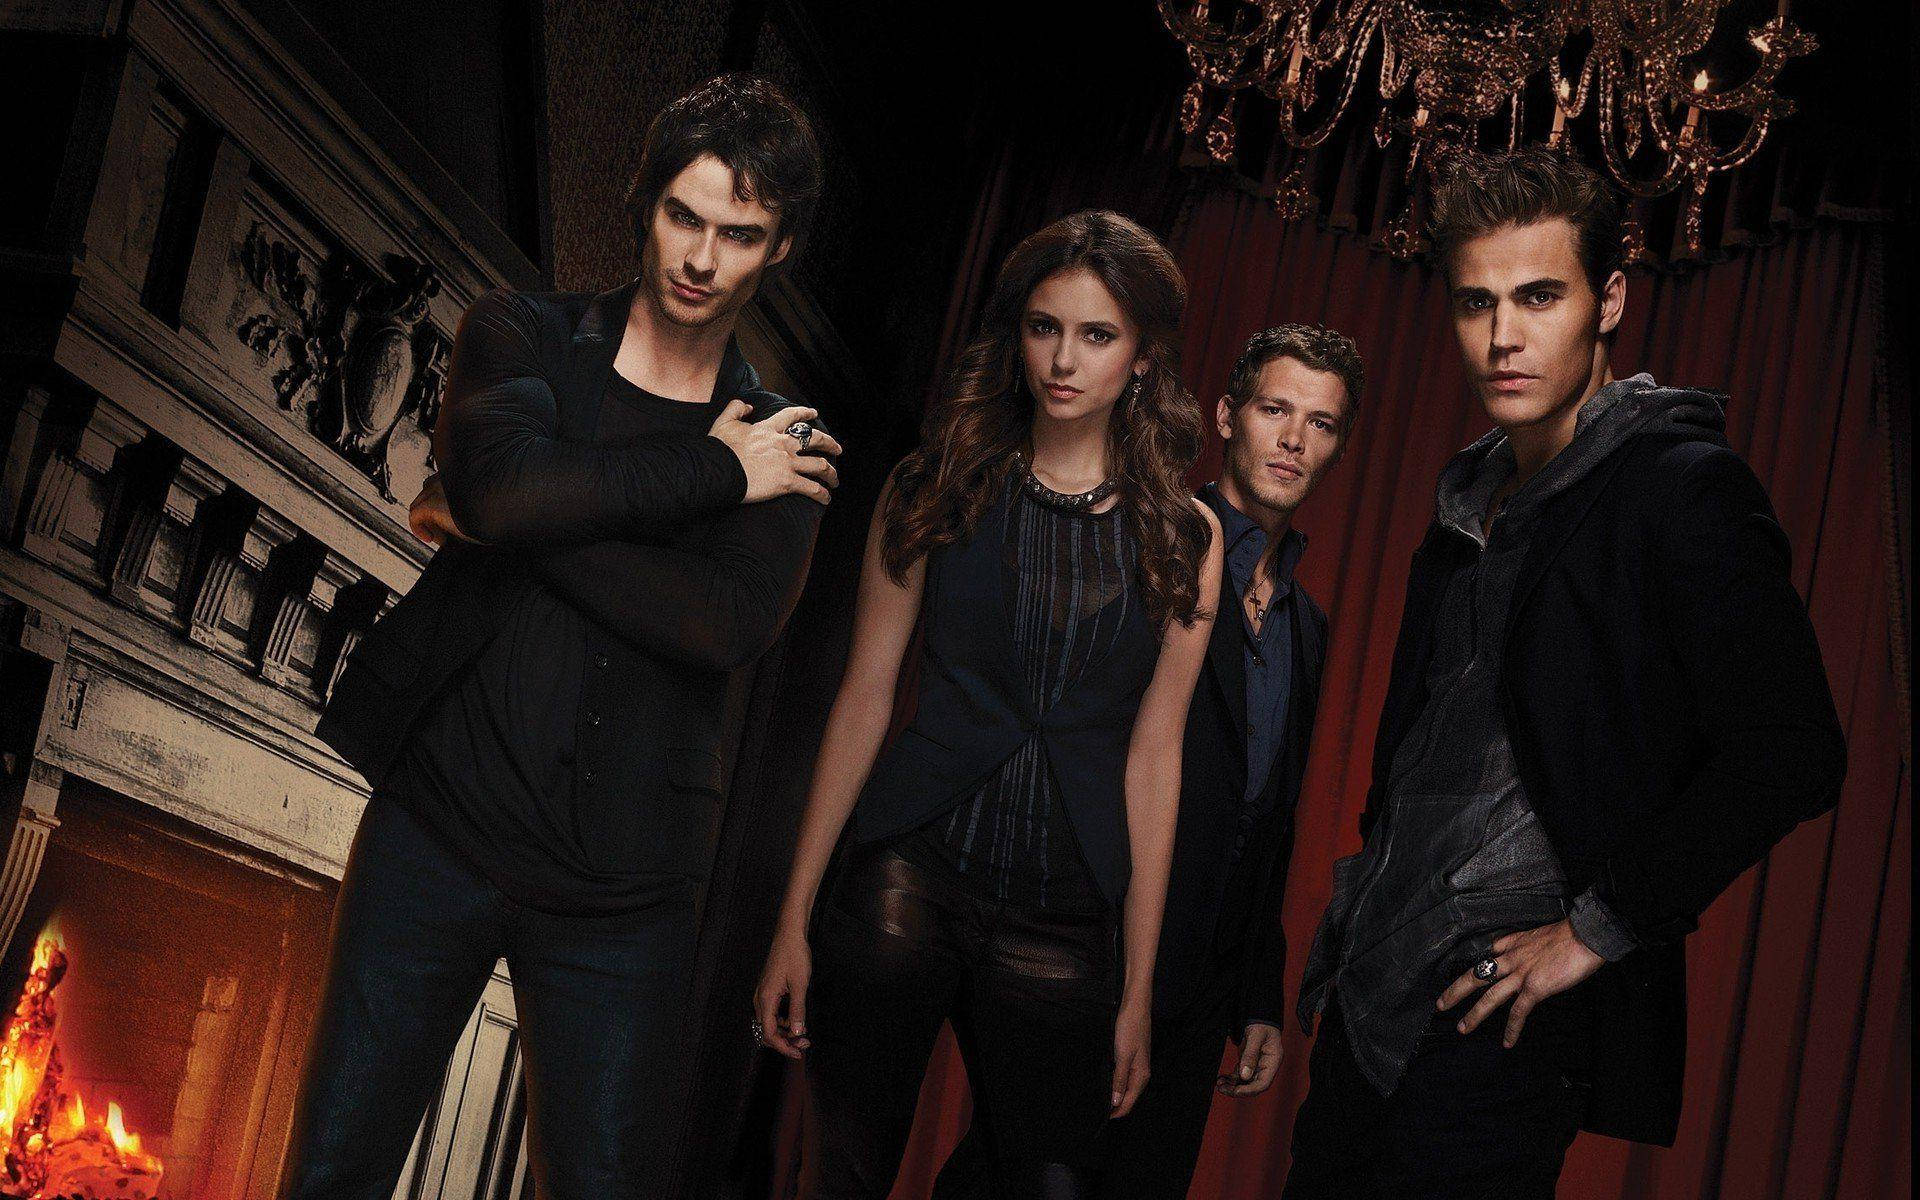 The Vampire Diaries Damon Salvatore Wallpaper